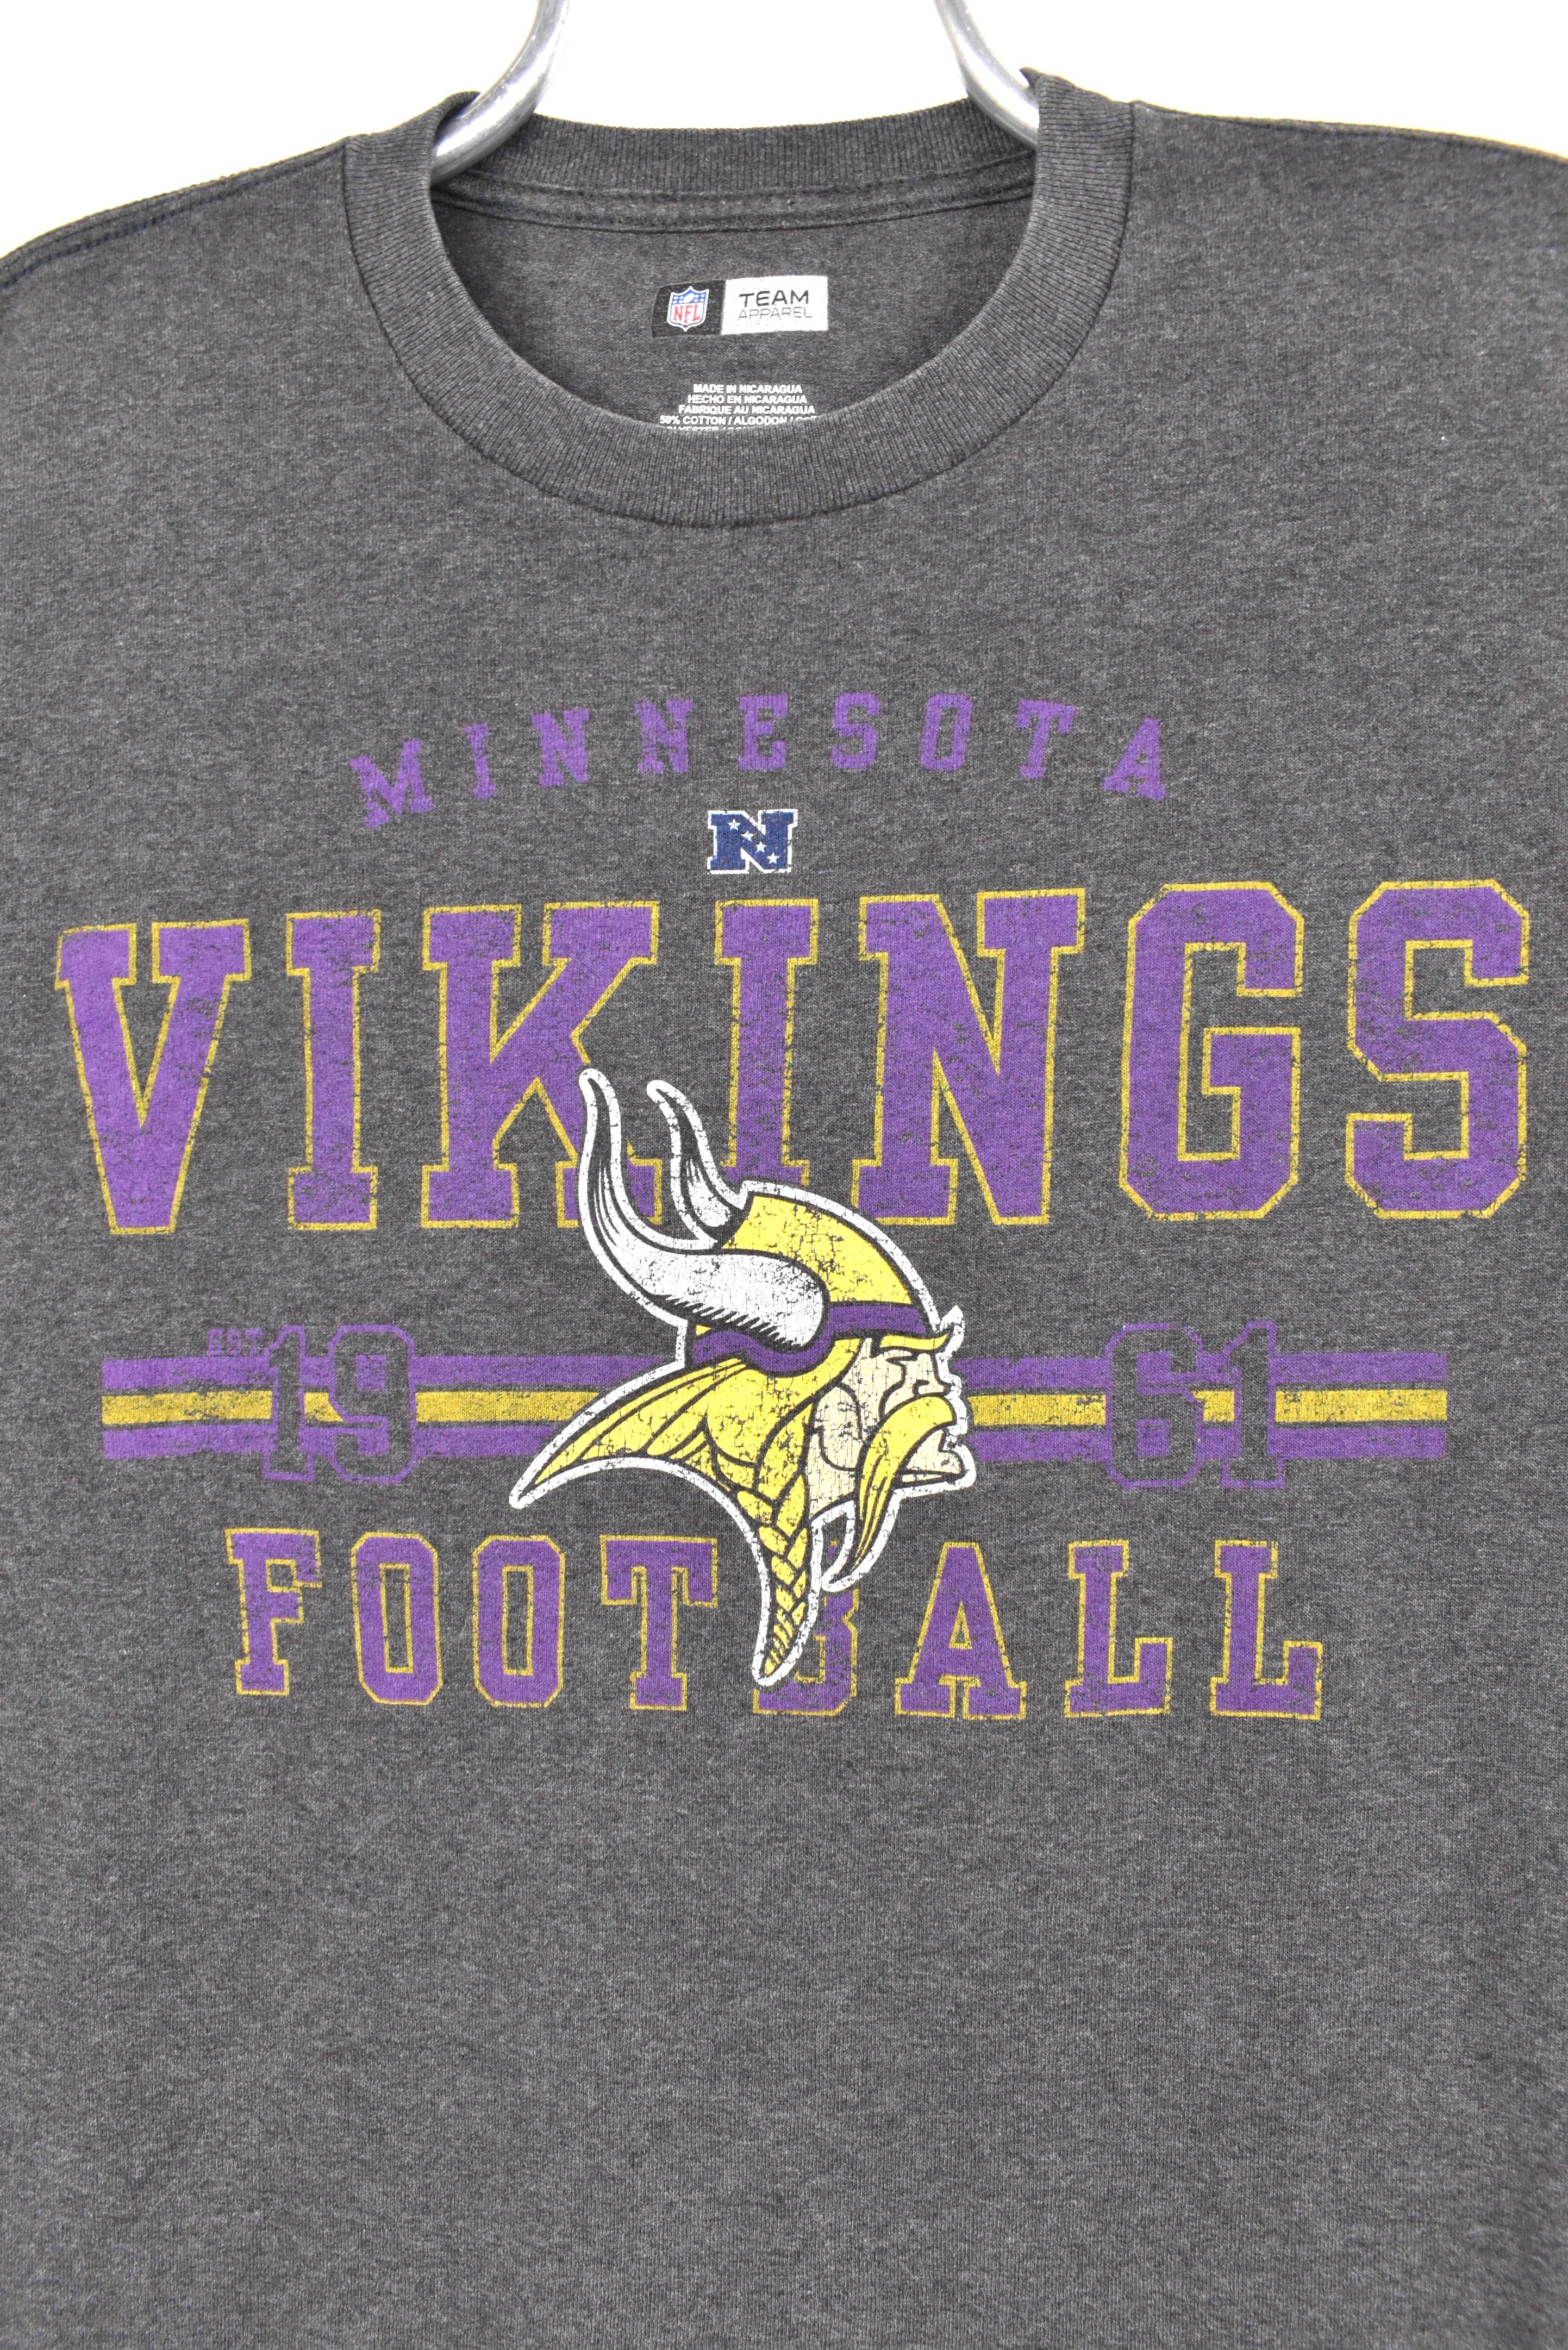 Vintage Minnesota Vikings shirt, NFL grey graphic tee - AU Medium PRO SPORT